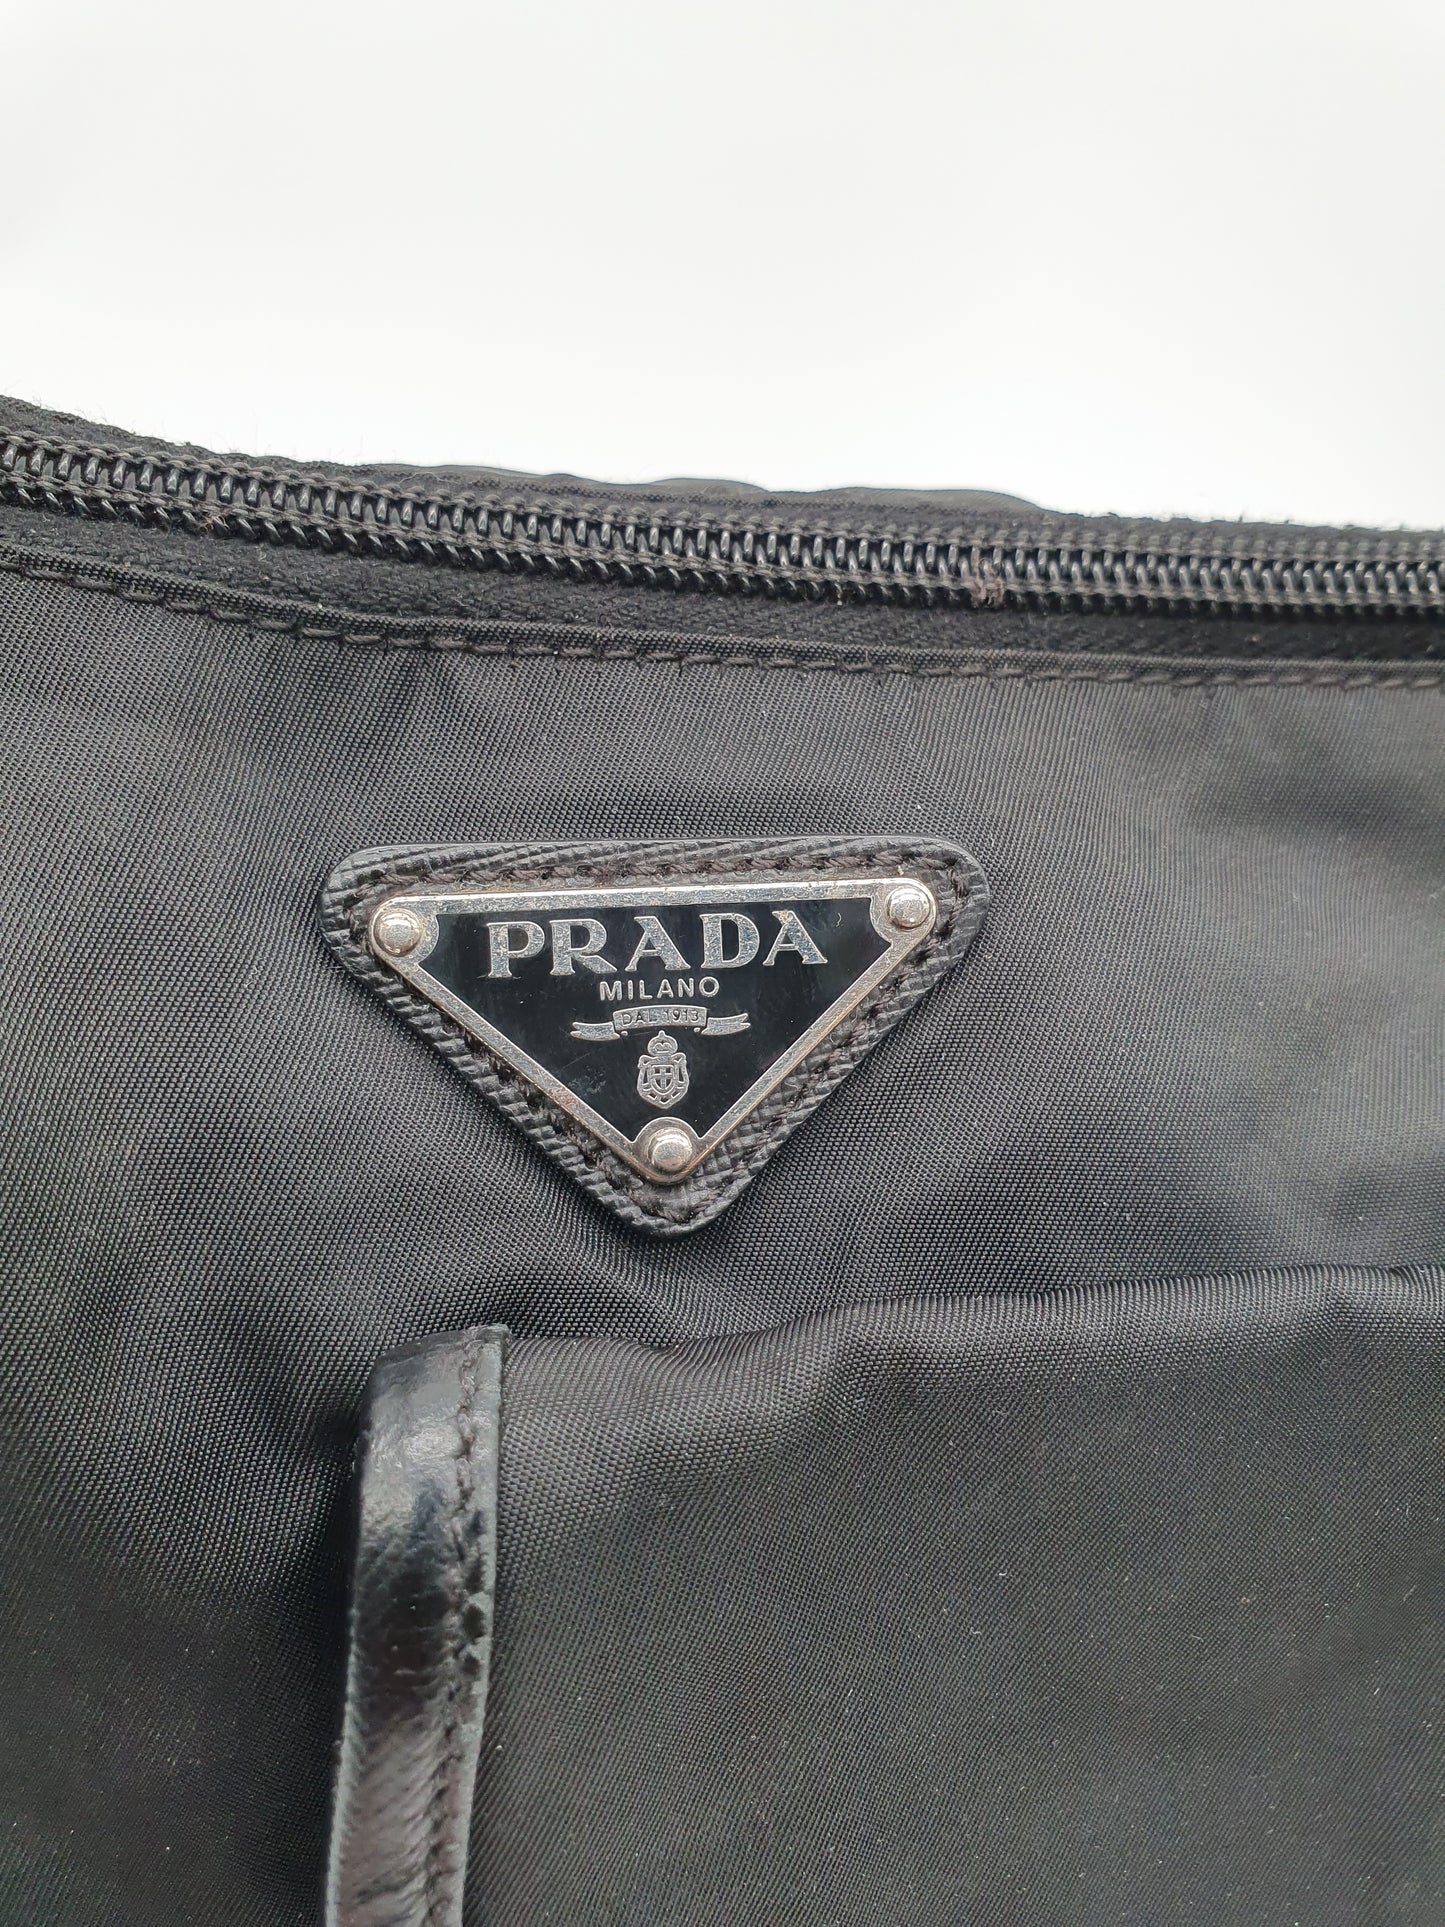 Prada re edition crossbody bag